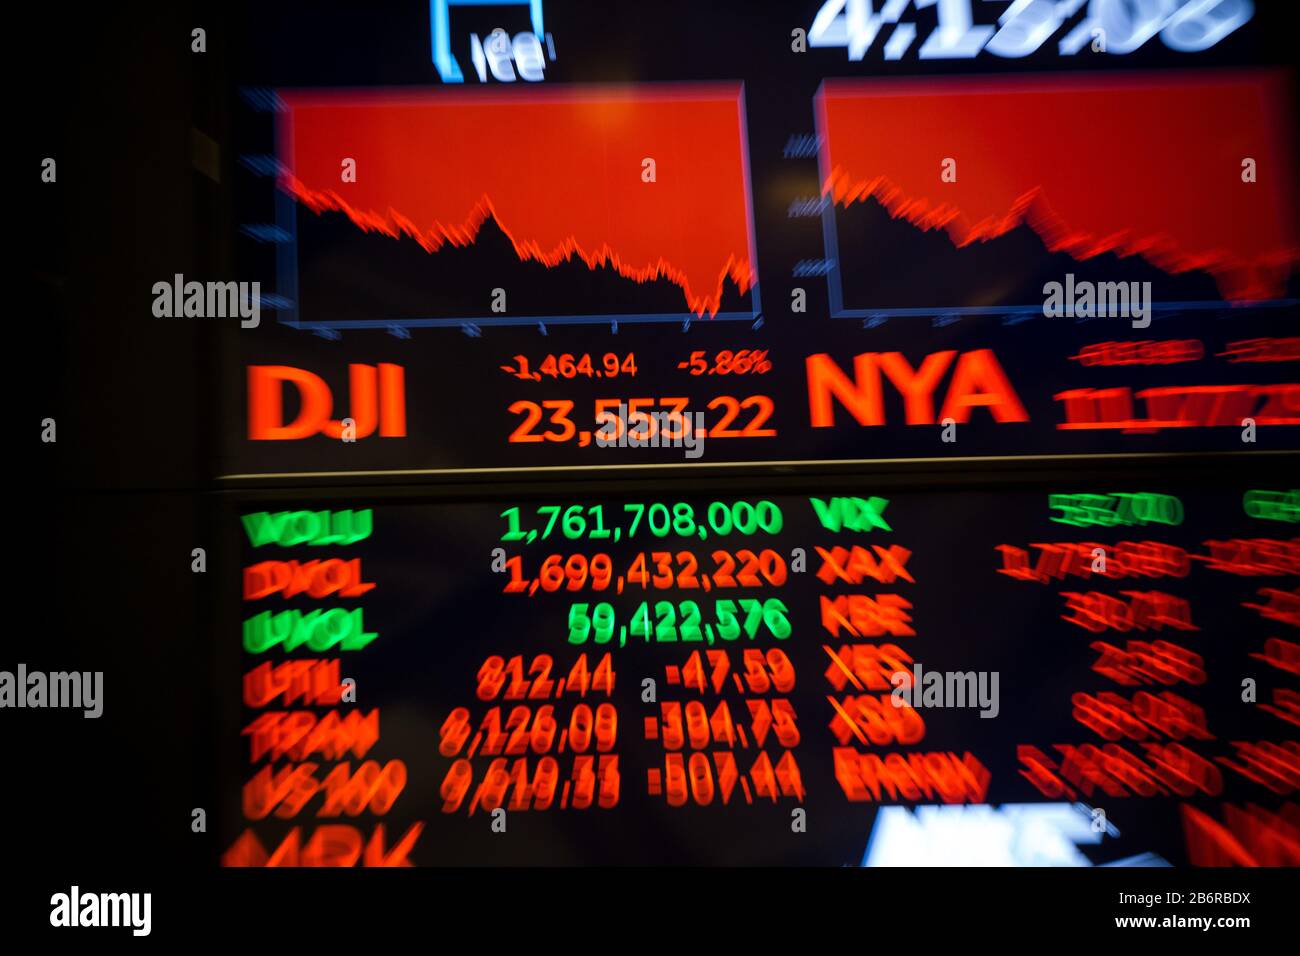 New York, Stati Uniti. 11th Mar, 2020. Una schermata mostra i dati di trading alla Borsa di New York (NYSE) a New York, Stati Uniti, l'11 marzo 2020. La Dow Jones Industrial Average ha registrato un picco di 1.464,94 punti, pari al 5,86%, a 23.553,22. L'indice delle 30 azioni è sceso in un territorio di mercato dell'orso, in diminuzione di oltre il 20% rispetto alla chiusura record del mese scorso. La S&P 500 è diminuita di 140,85 punti, pari al 4,89%, per arrivare a 2.741,38. L'indice composito Nasdaq ha immerso 392,20 punti, ossia 4,70 per cento, a 7,952,05. Credito: Michael Nagle/Xinhua/Alamy Live News Foto Stock